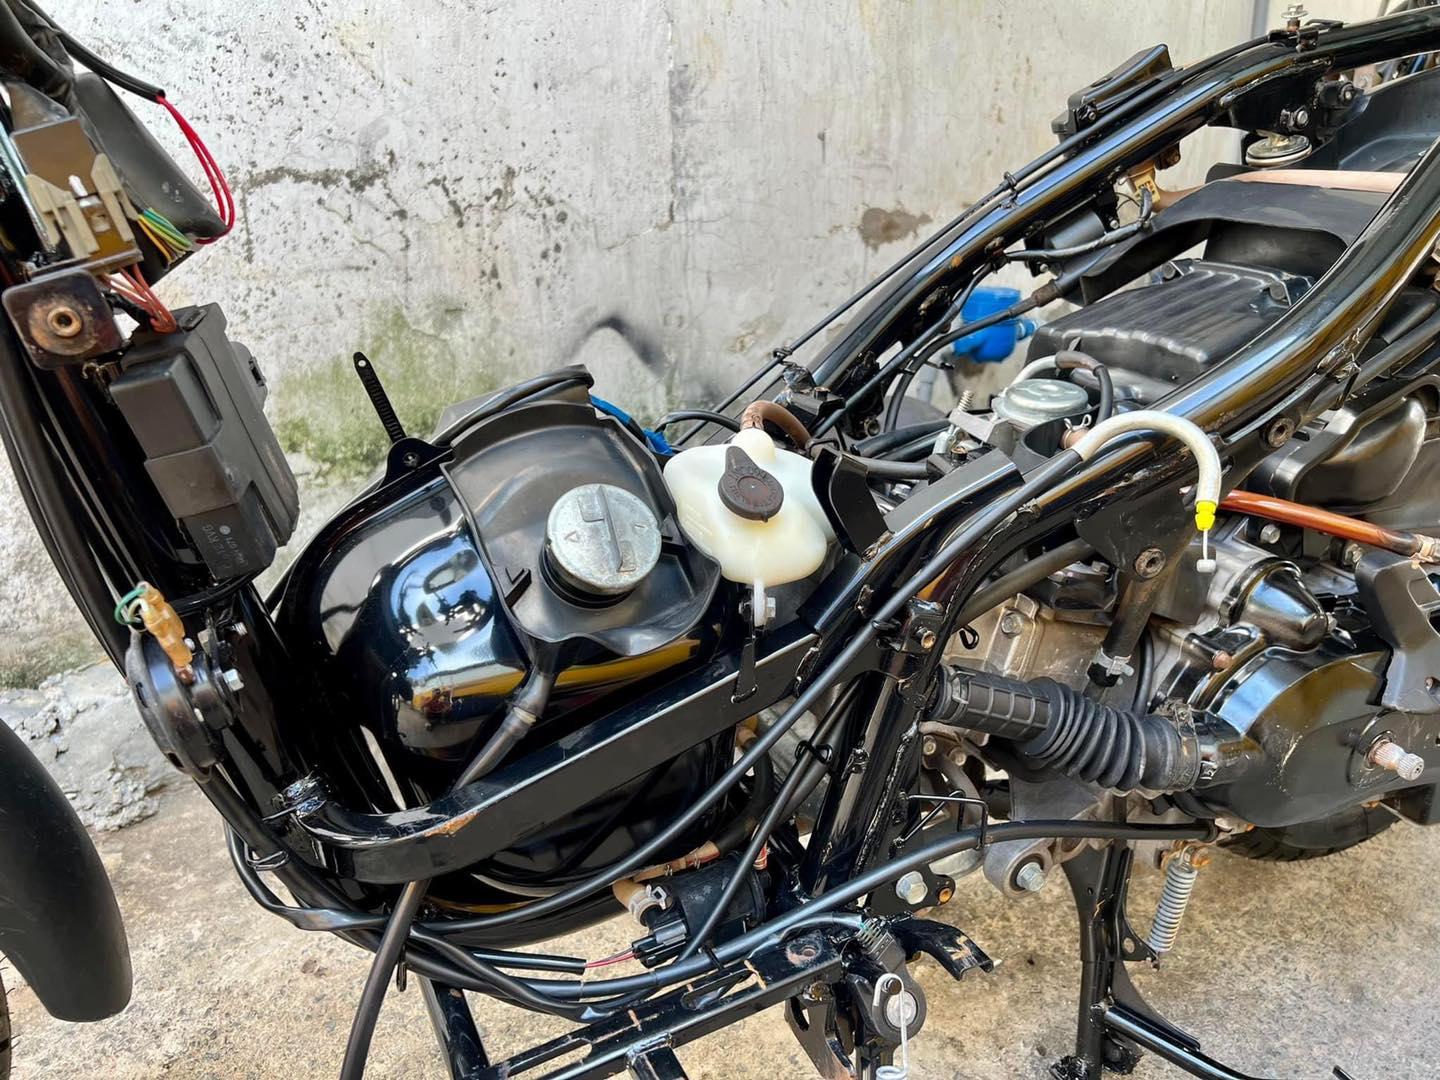 Dung Dịch Tẩy Rửa ĐA NĂNG Motorbike Cleaner Chuyên Dùng Cho Ôtô, Xe Máy 850ml Tặng Kèm Đầu Xịt, Bàn Chải Và Cọ Sên 3D